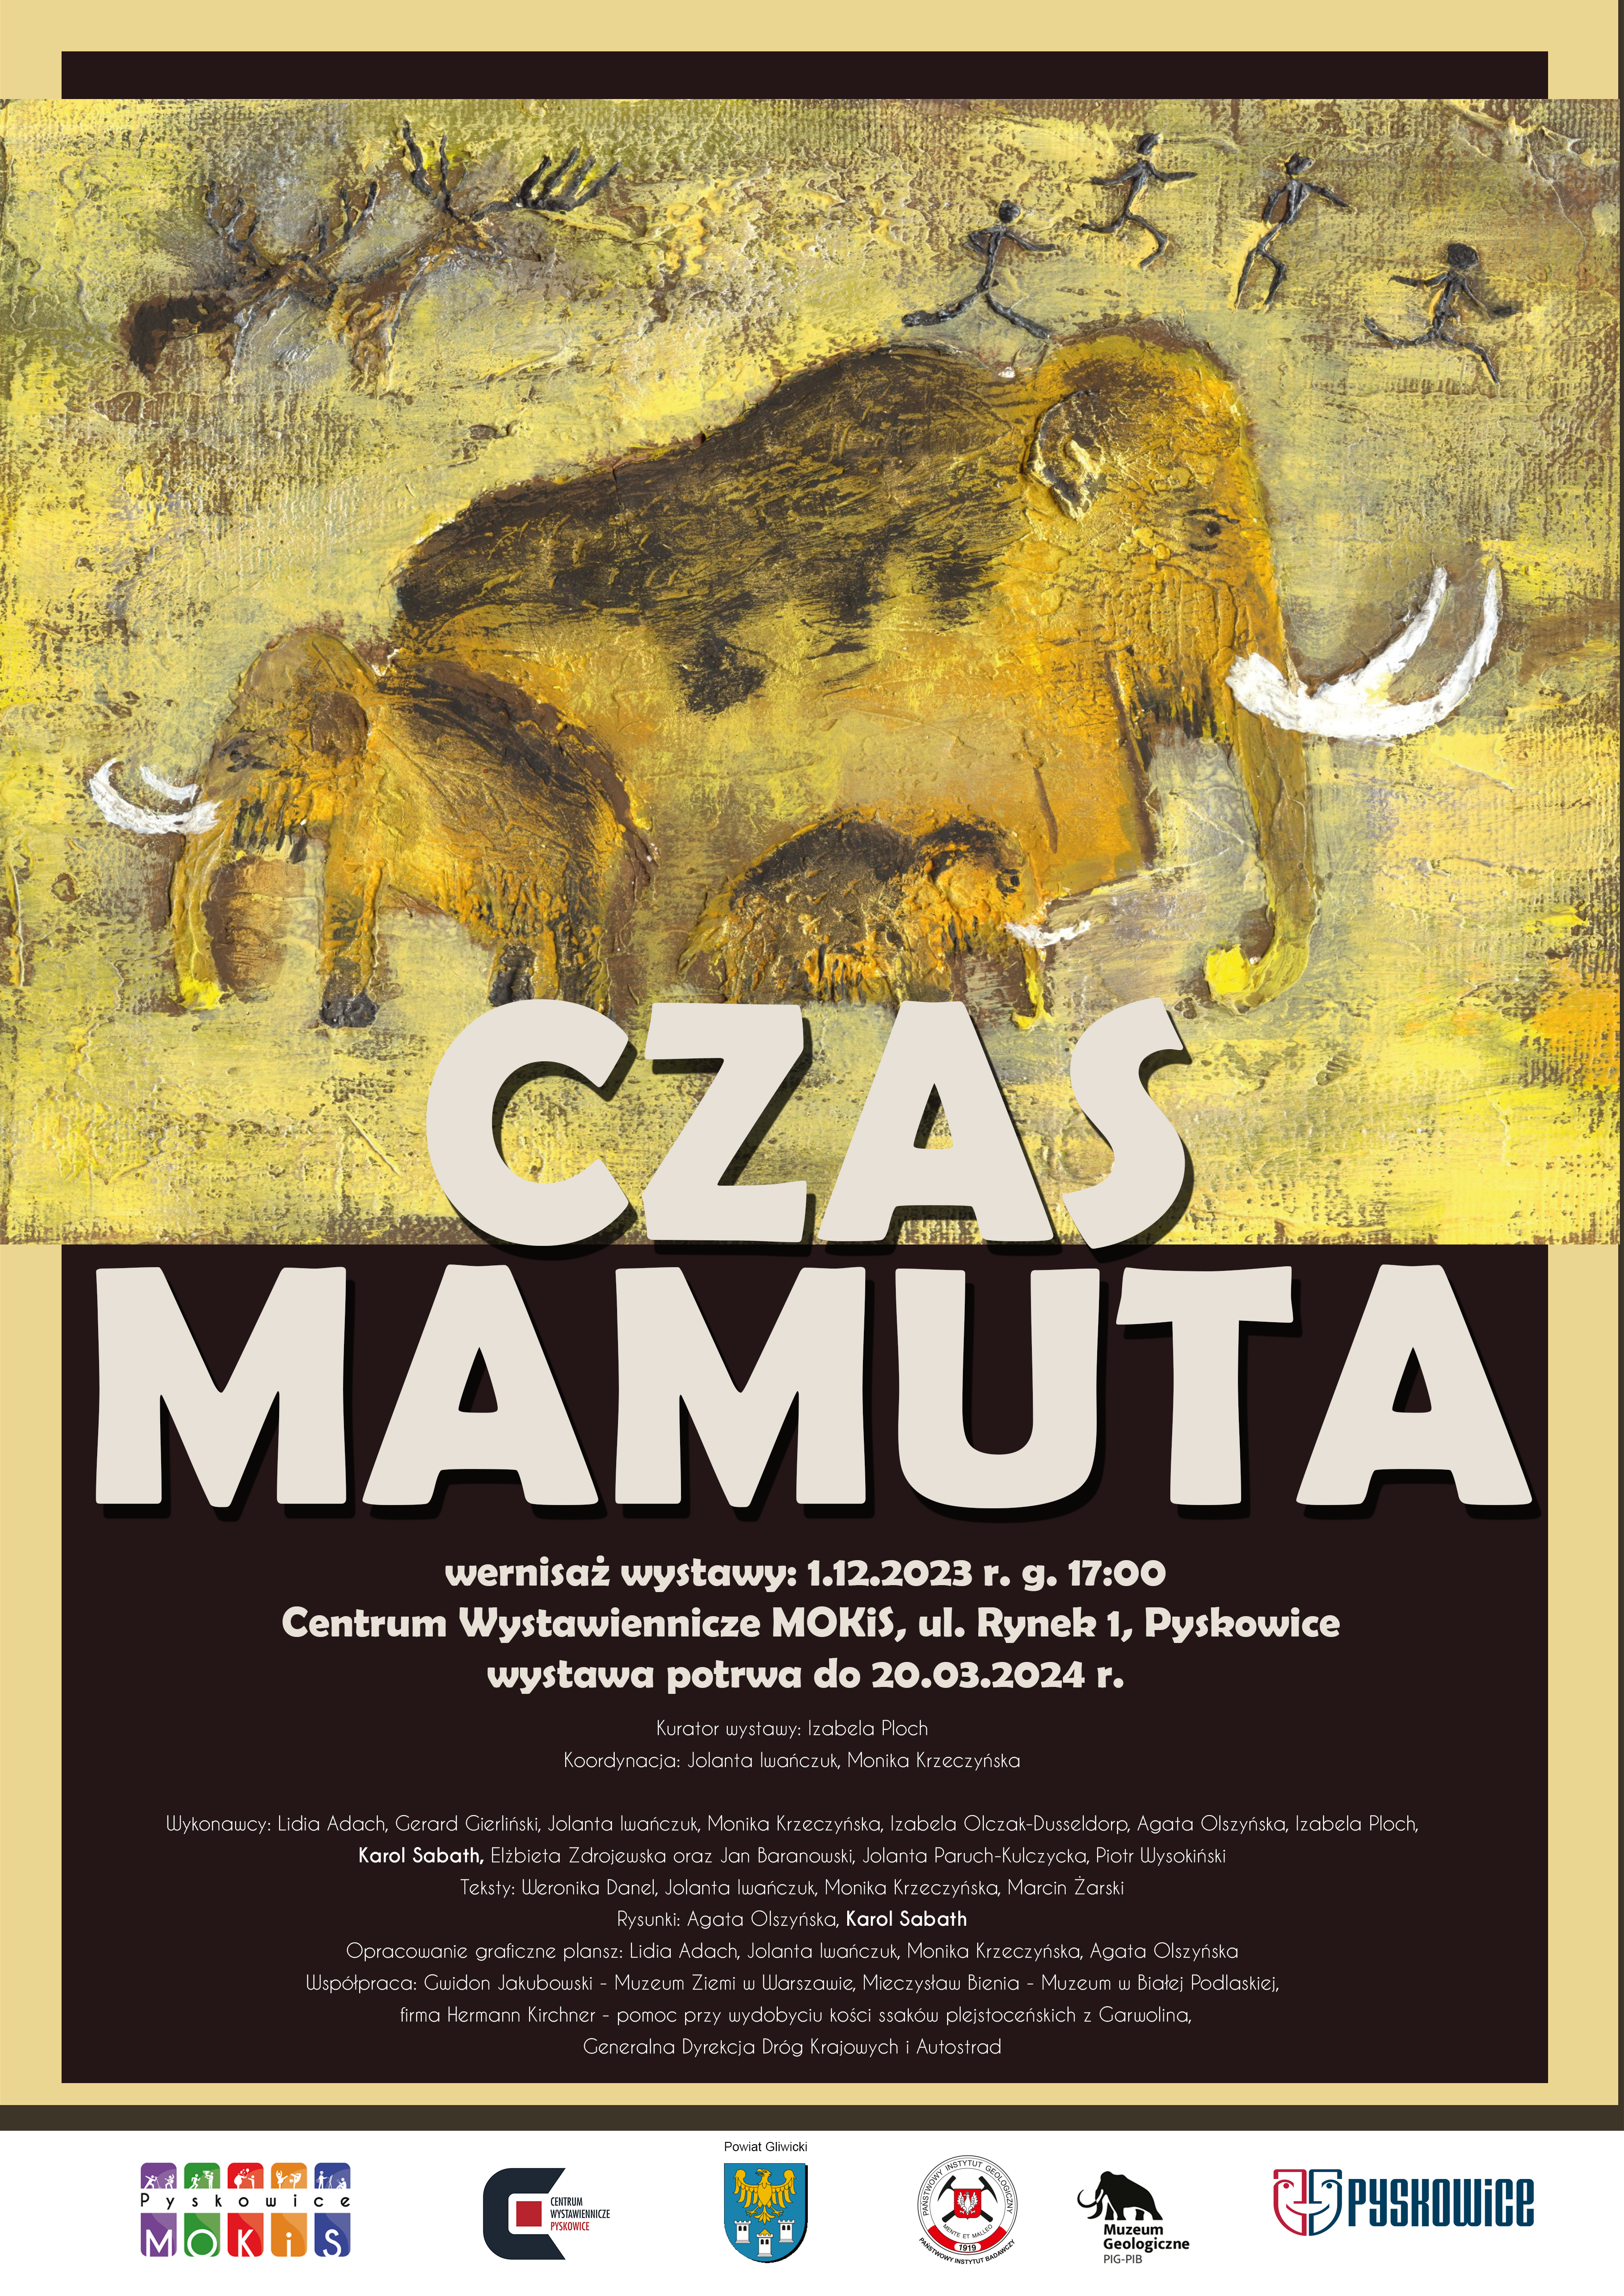 Plakat promujący Czas Mamuta